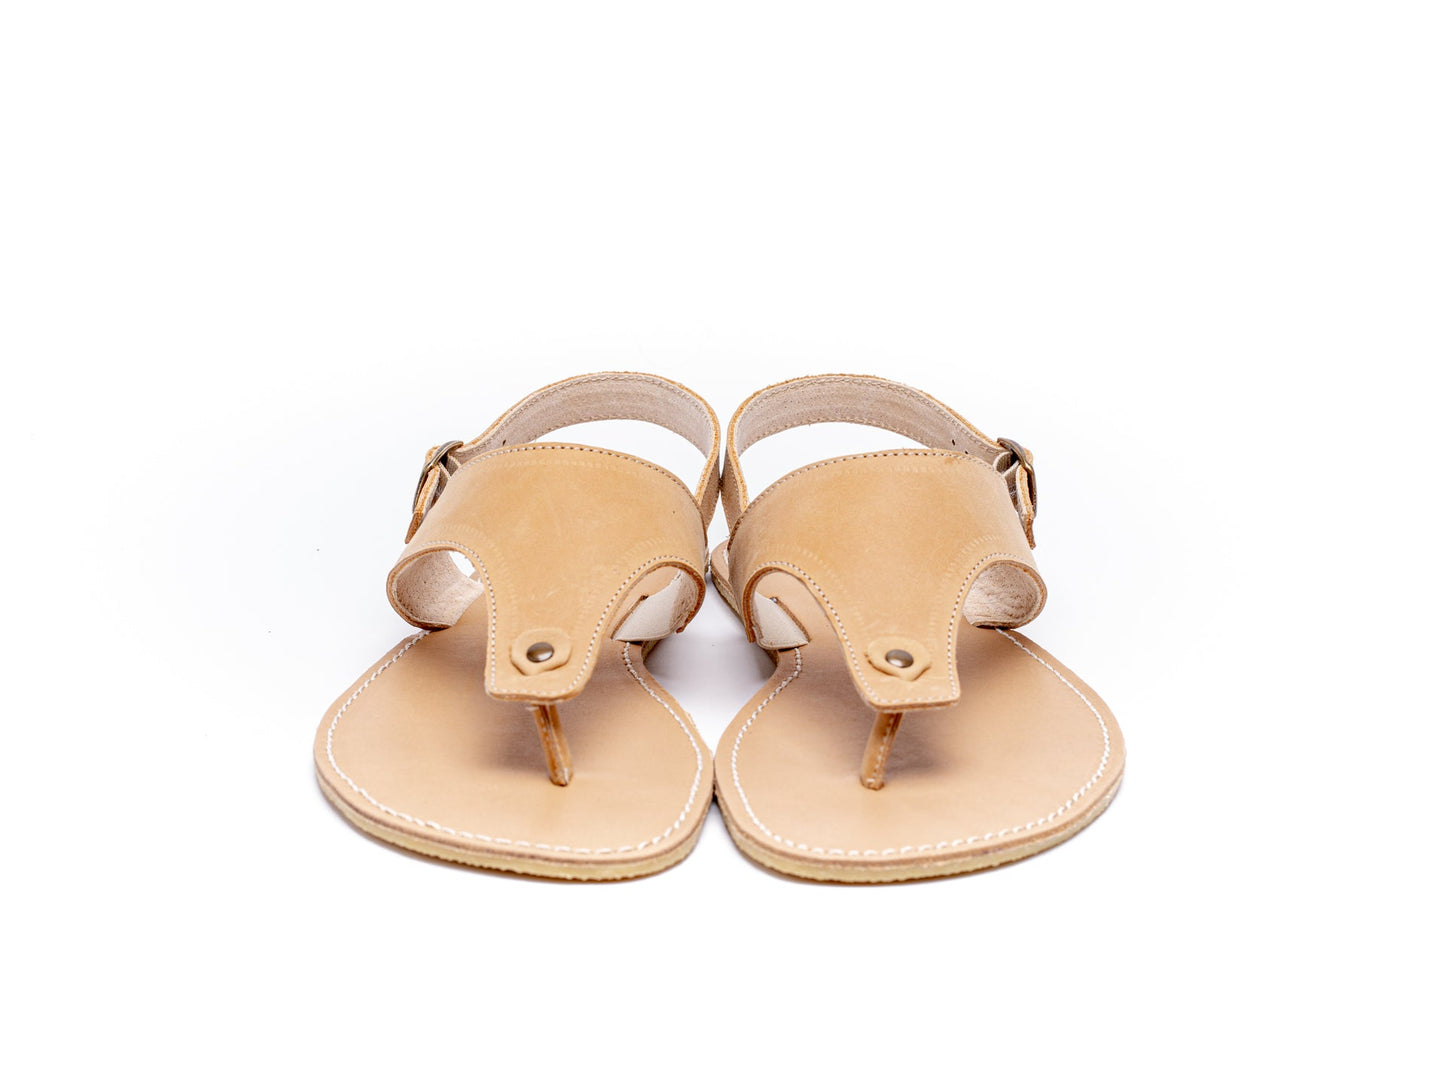 Be Lenka Promenade barfods sandaler til kvinder i farven sand, forfra